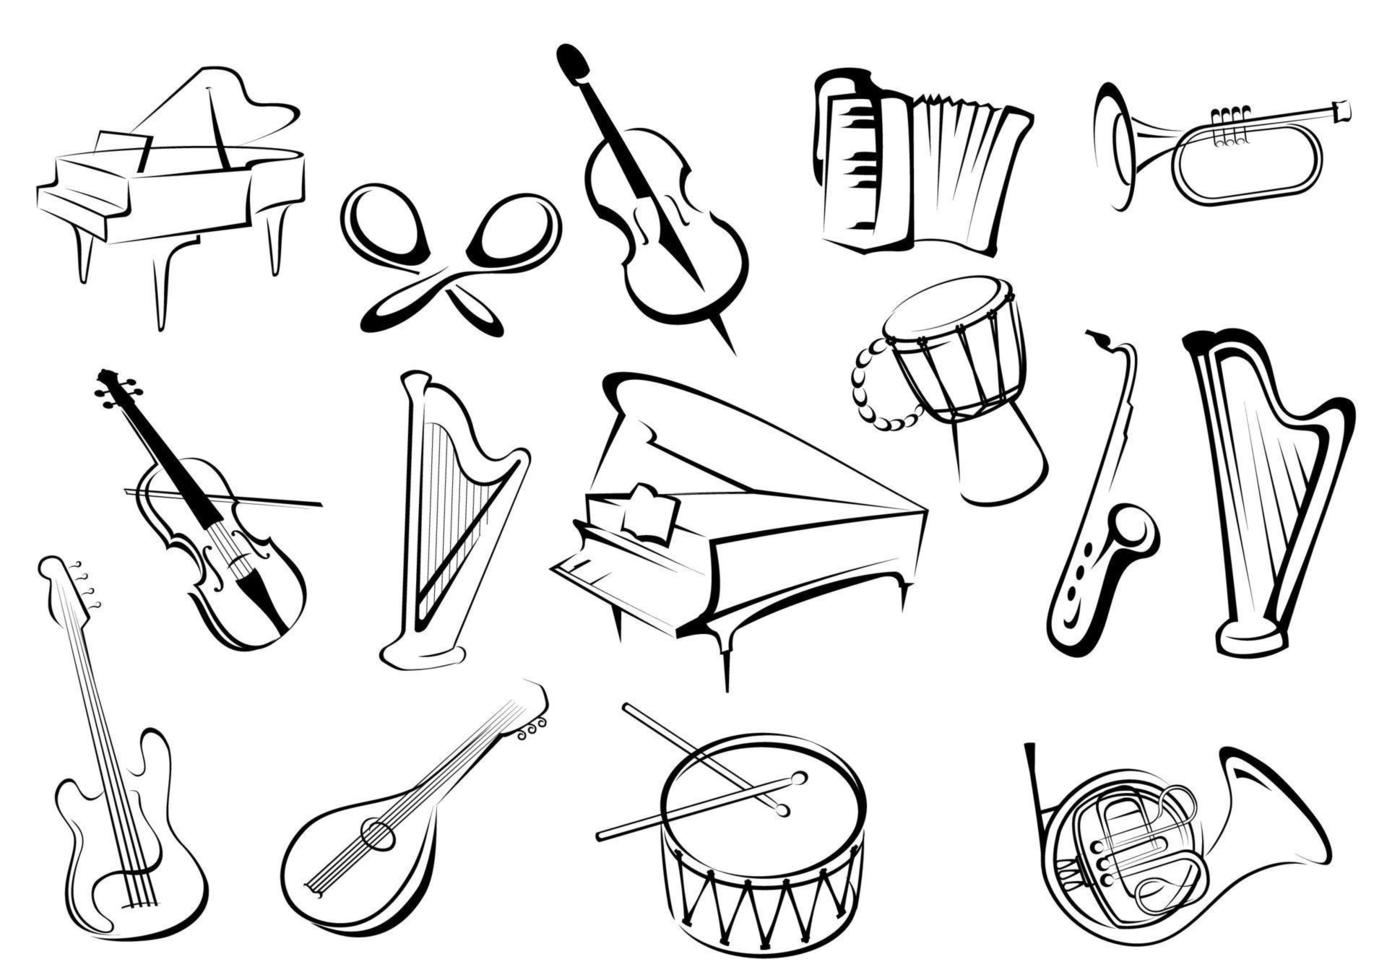 iconos de instrumentos musicales en estilo boceto vector